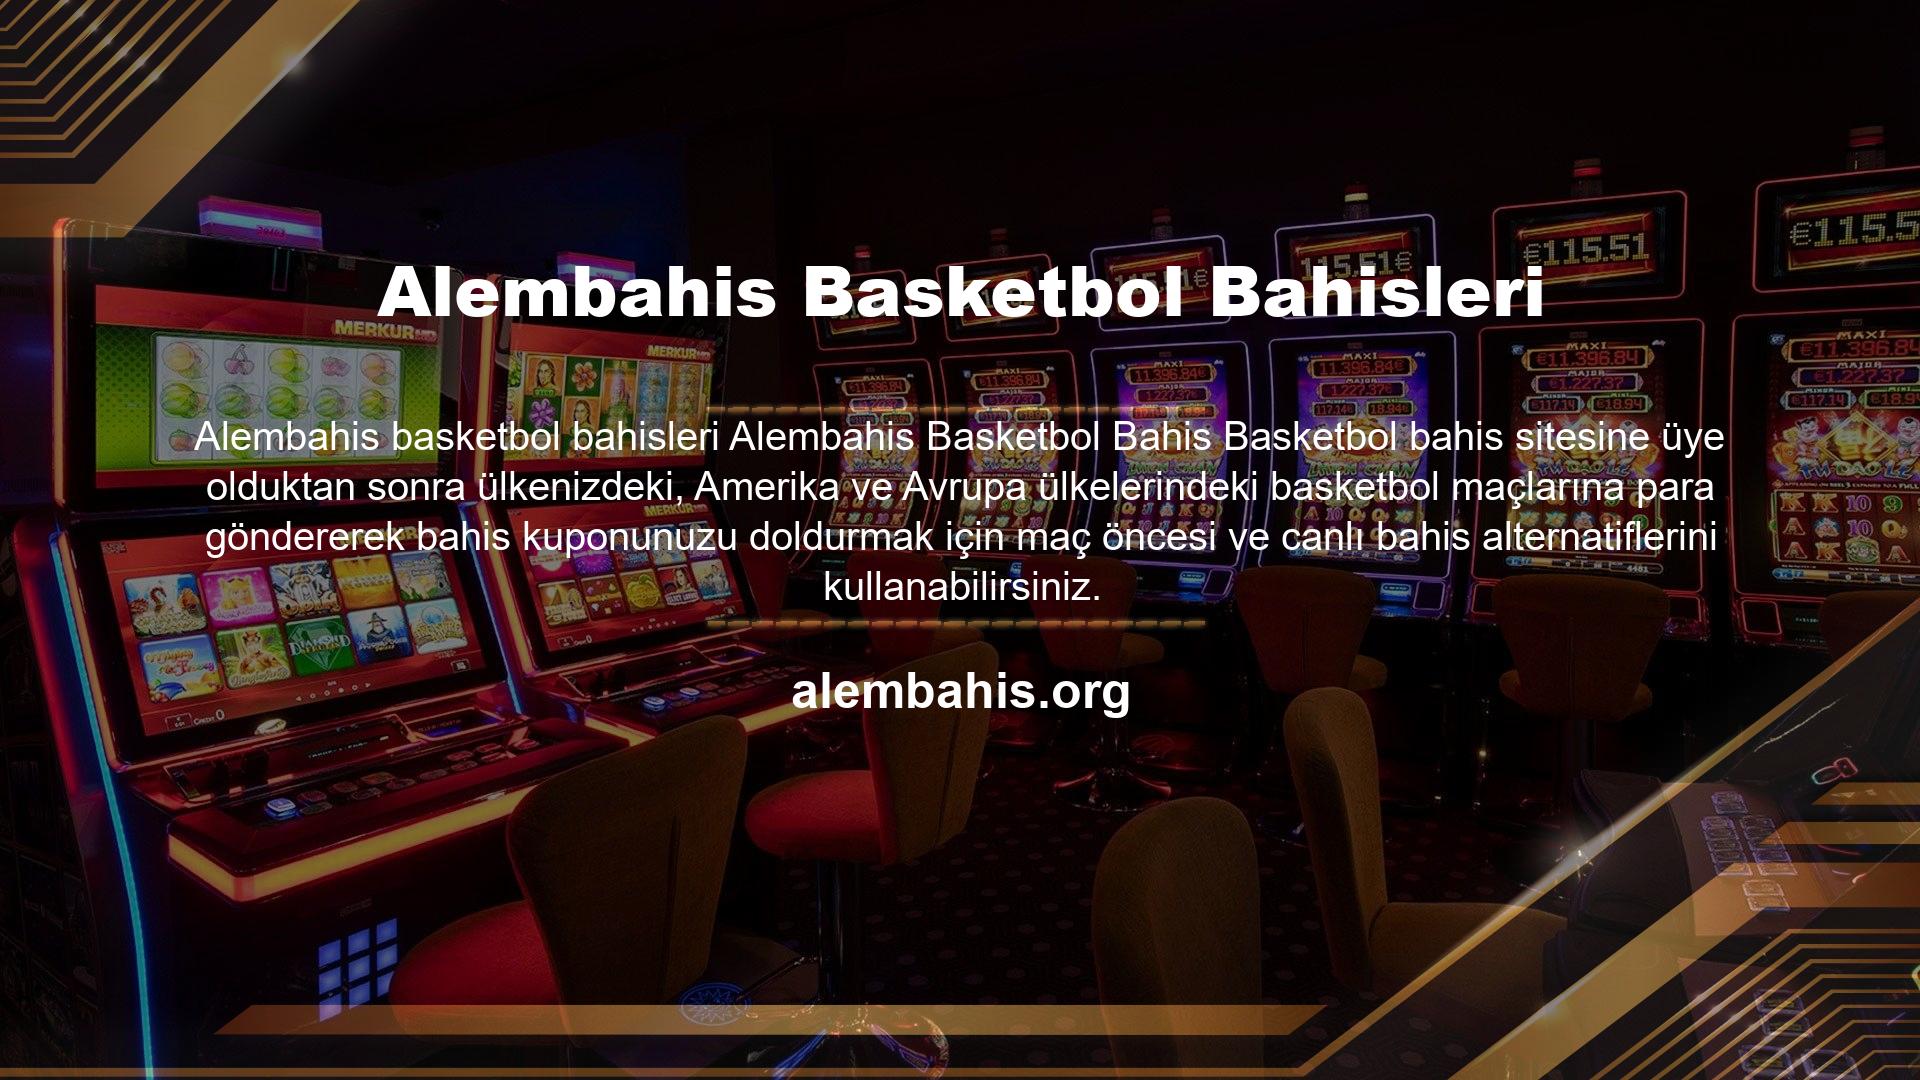 Basketbol bahisleri aracılığıyla Alembahis bahis sitesinde deneyimlenen en yüksek tutarı kullanarak Alembahis Casino/Canlı Casino'daki yatırımınıza çeşitli bonuslar kazandırabilirsiniz